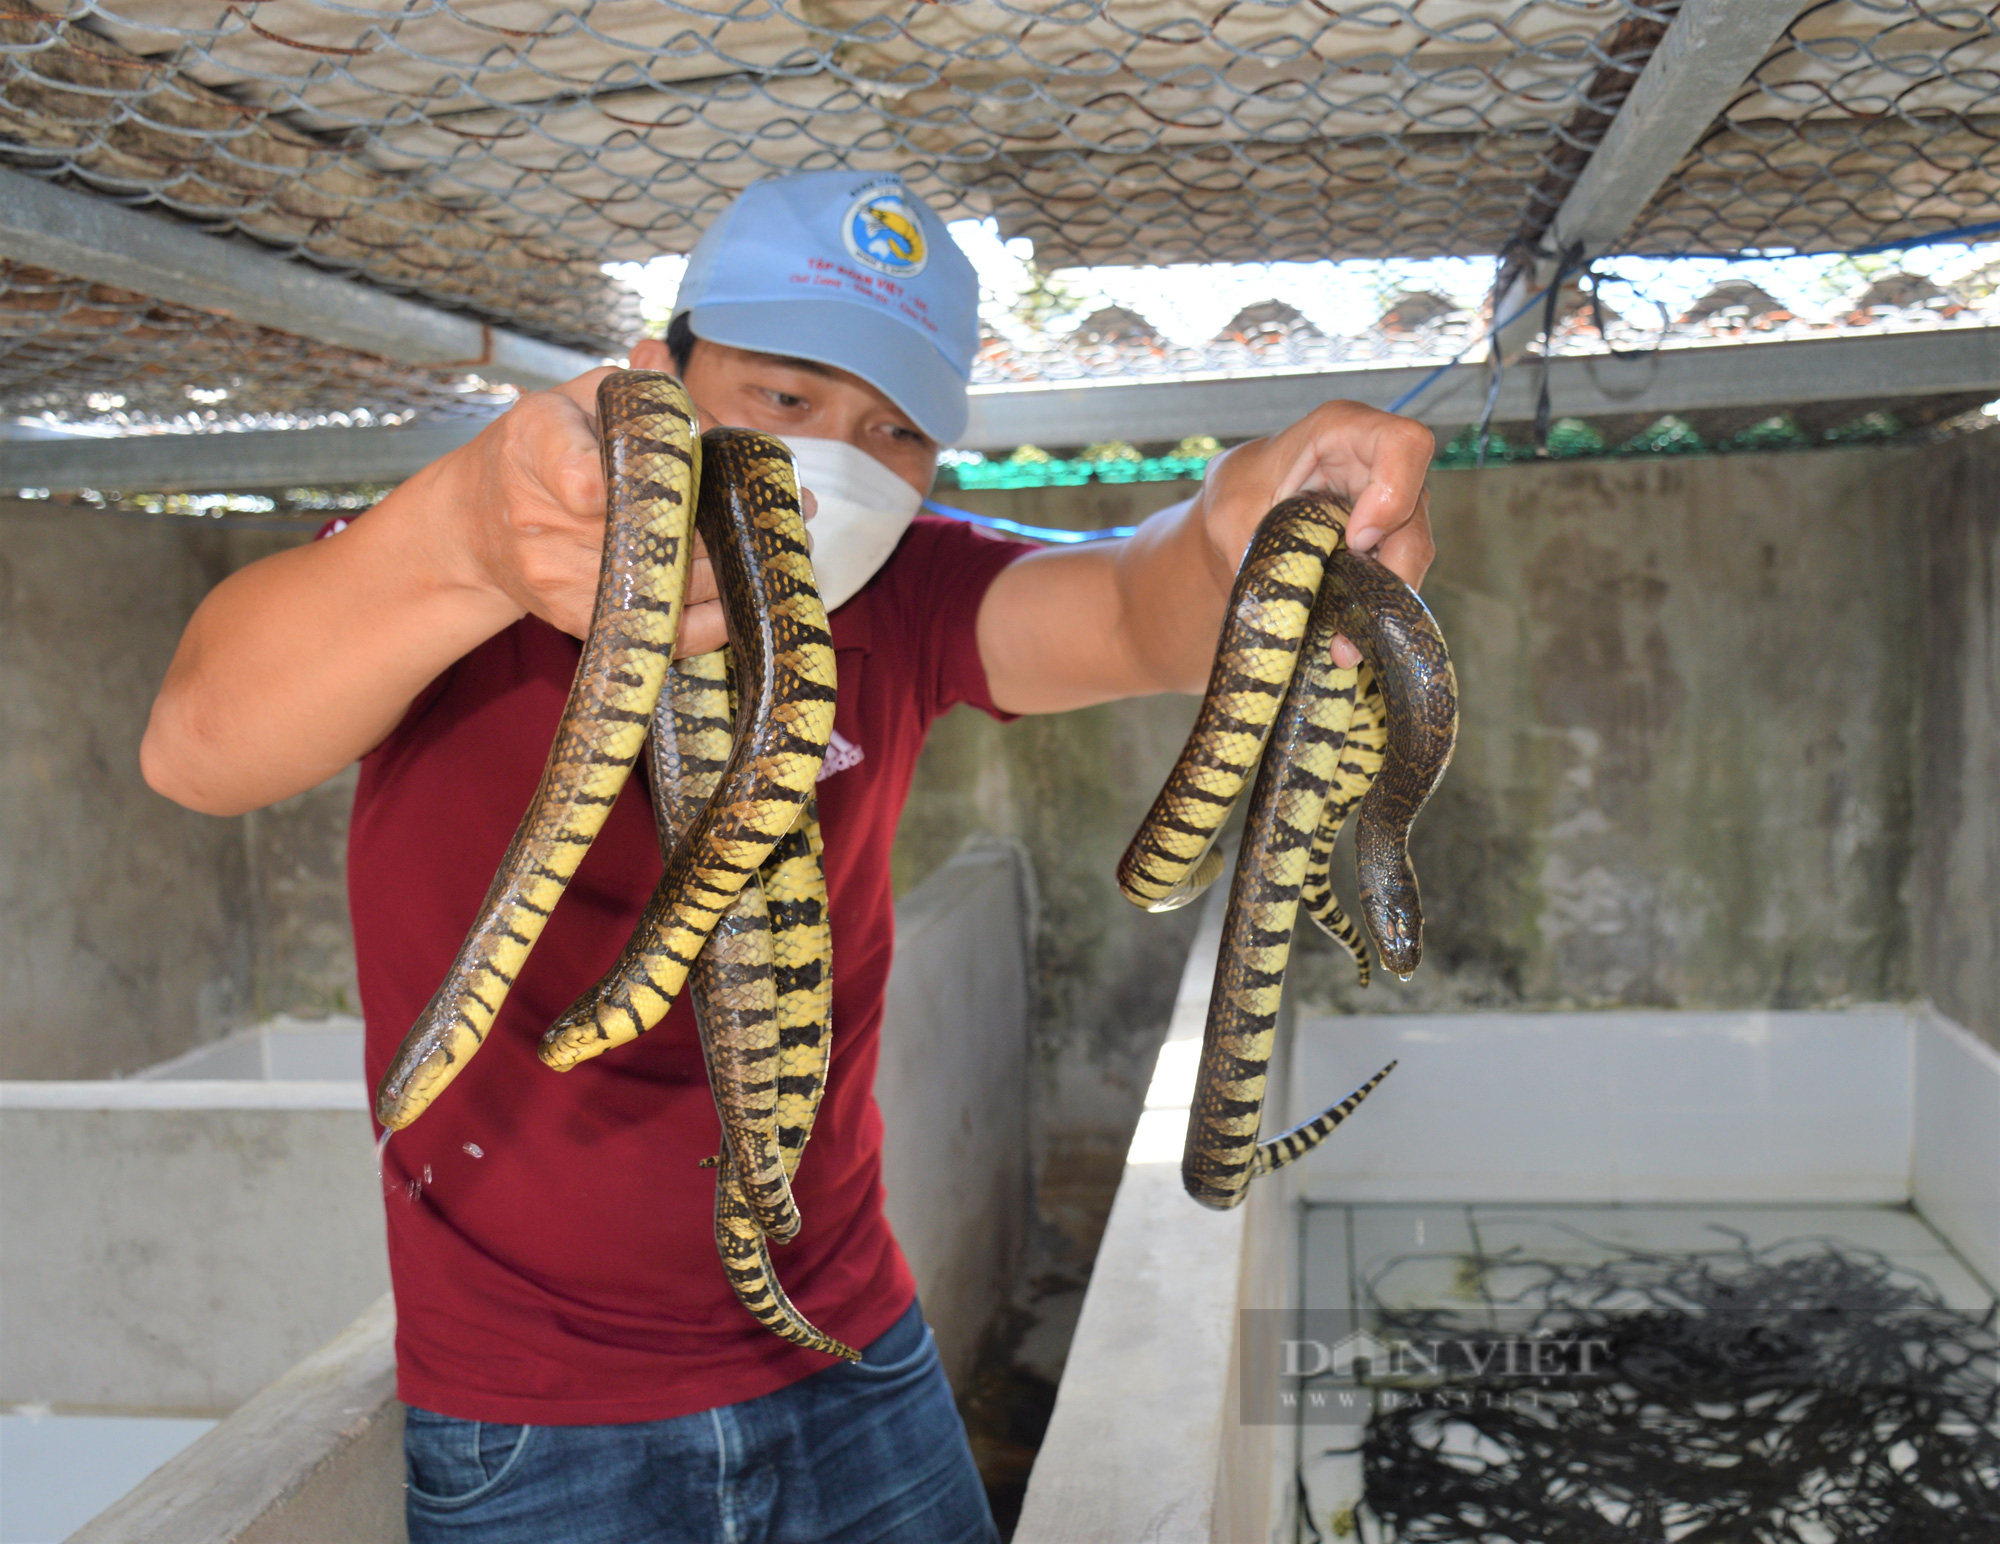 Nuôi loài rắn mập ú không có độc, trai làng bán mỗi kg nửa triệu đồng - Ảnh 6.